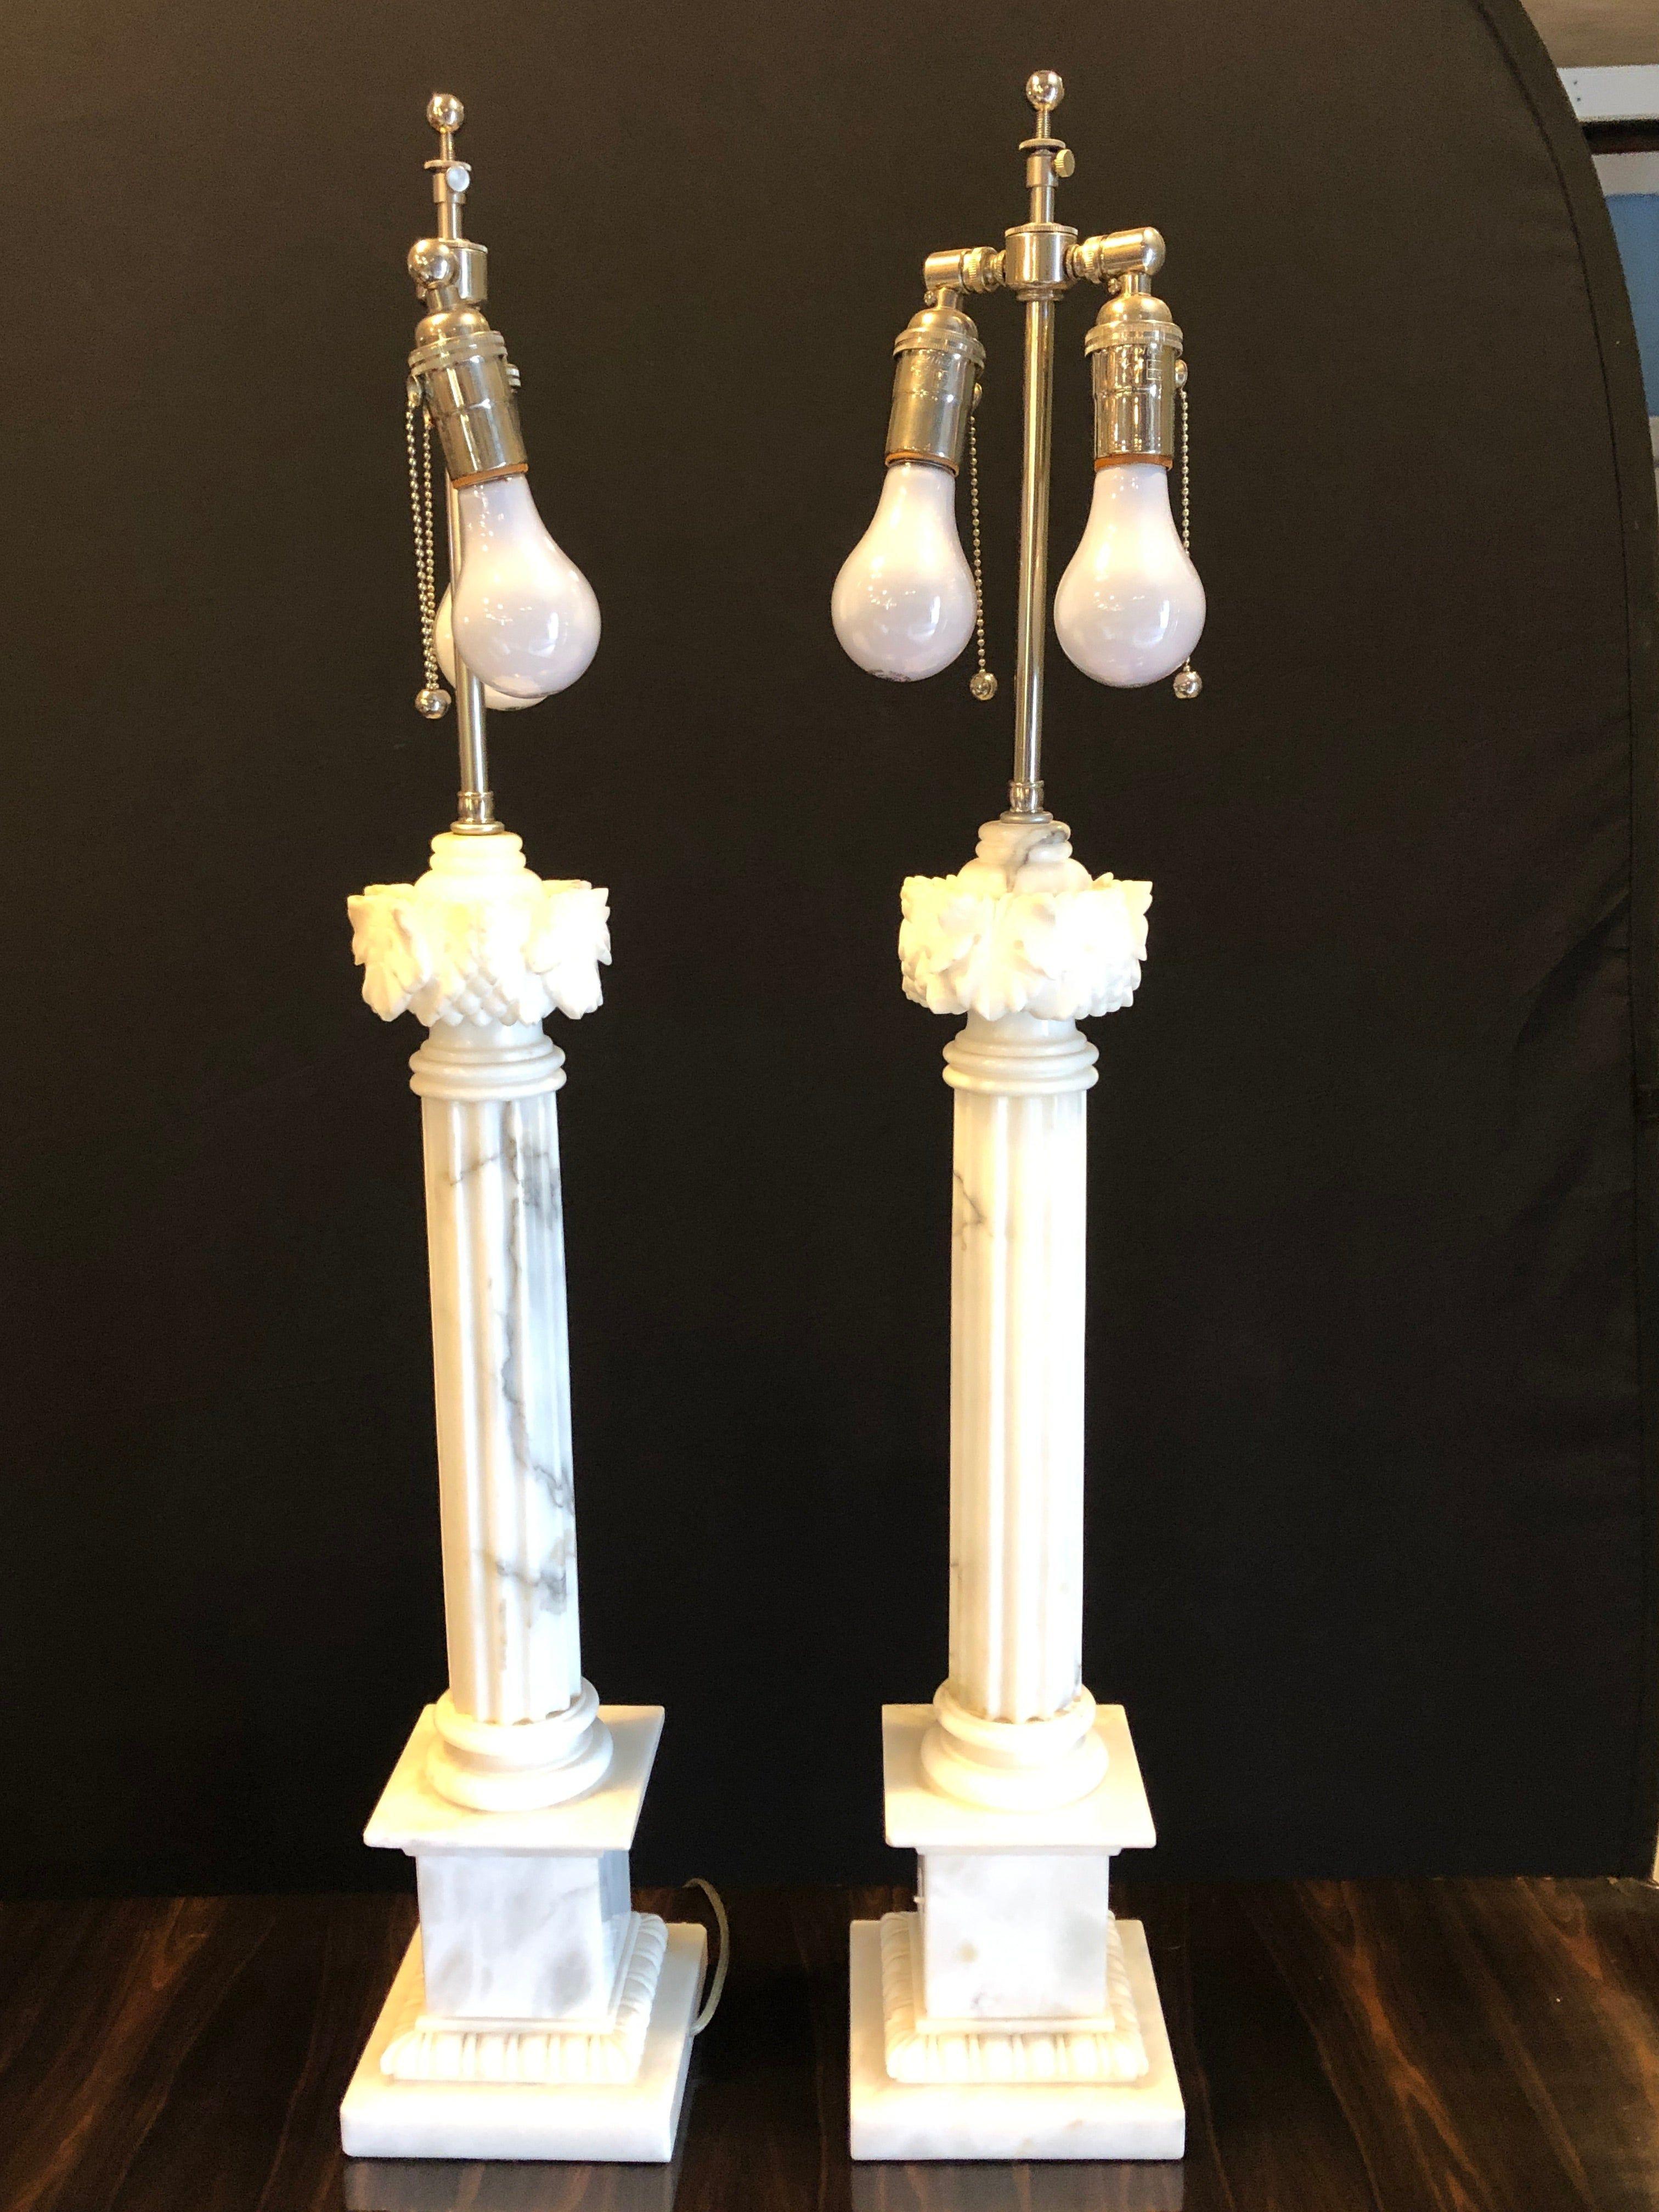 Une paire de lampes de table en marbre colonne veiné blanc et gris avec des abat-jour personnalisés.
Colonne en marbre de 24 pouces.